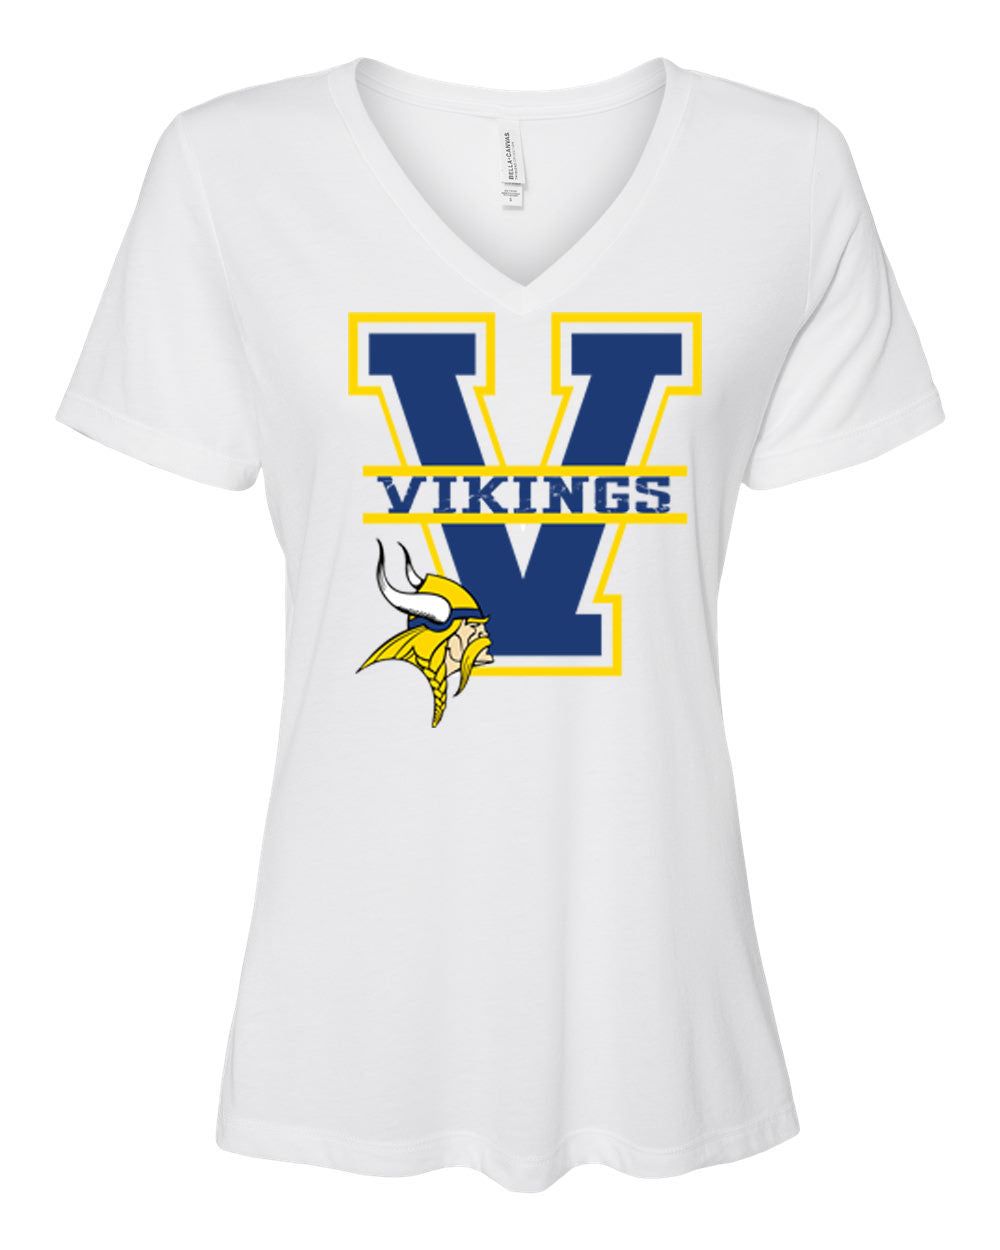 Vernon Design 24 V-neck T-shirt